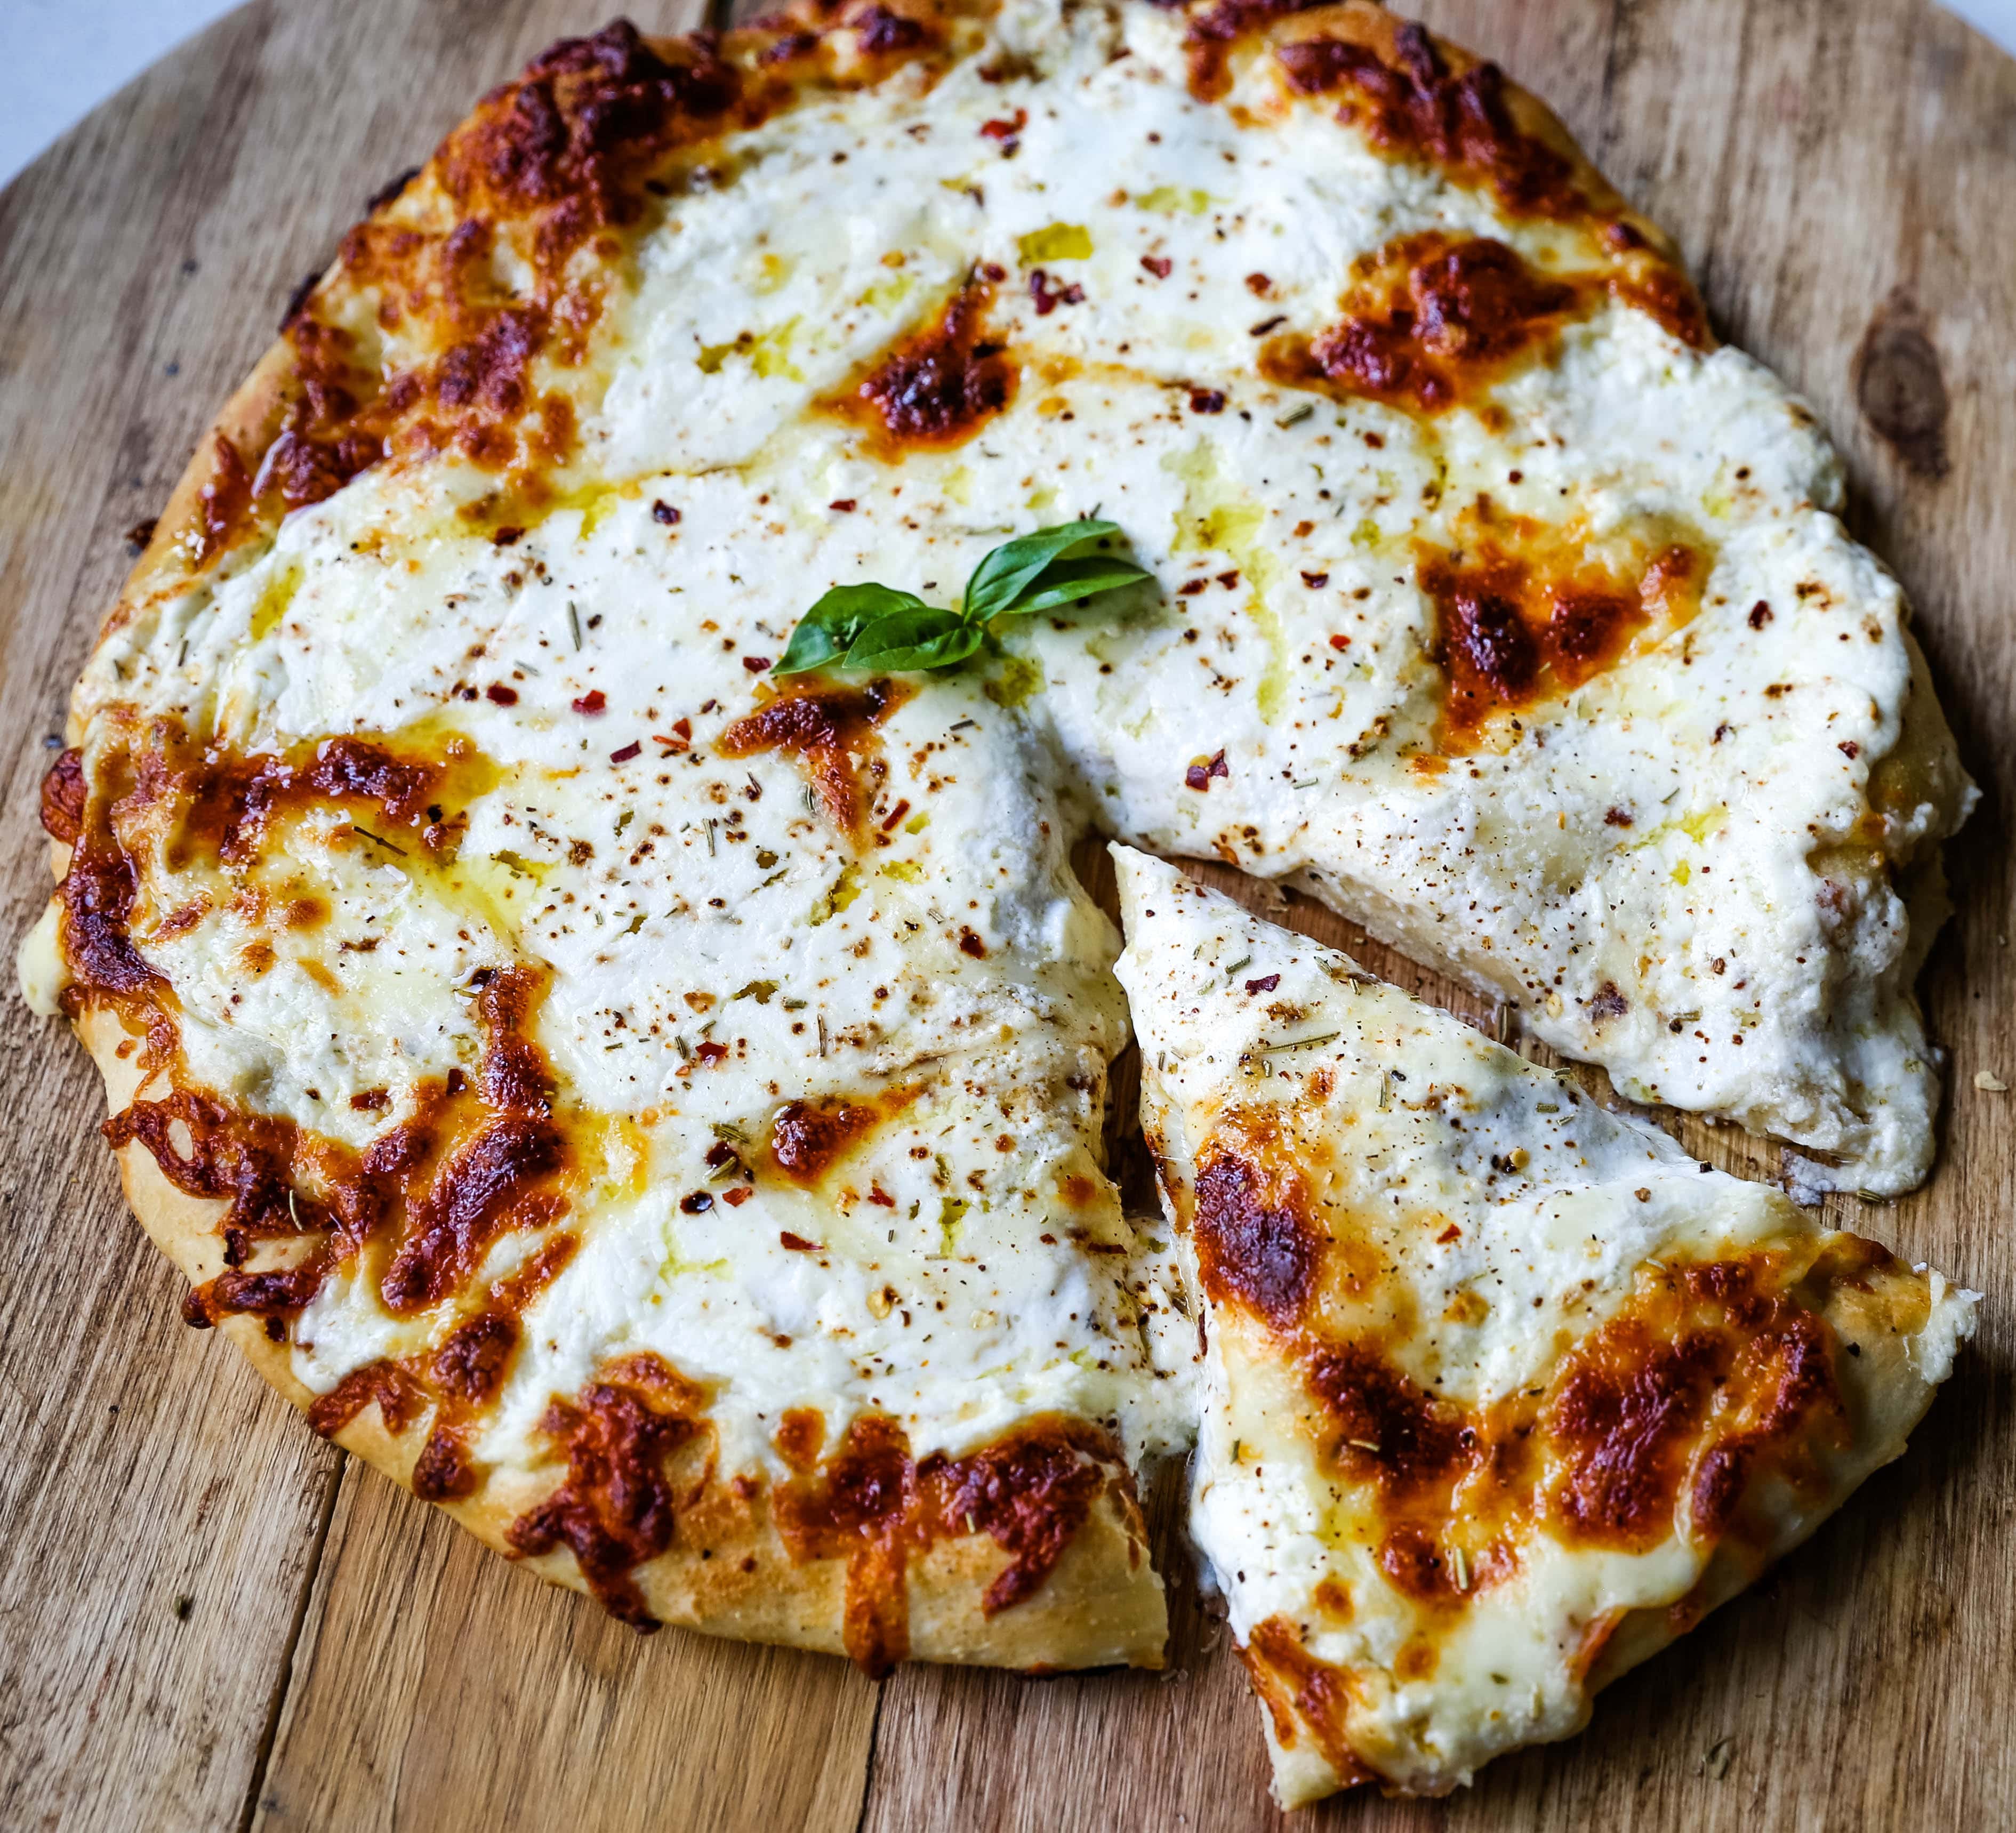 Mozzarella on Pizza: Types, Advantages, Techniques